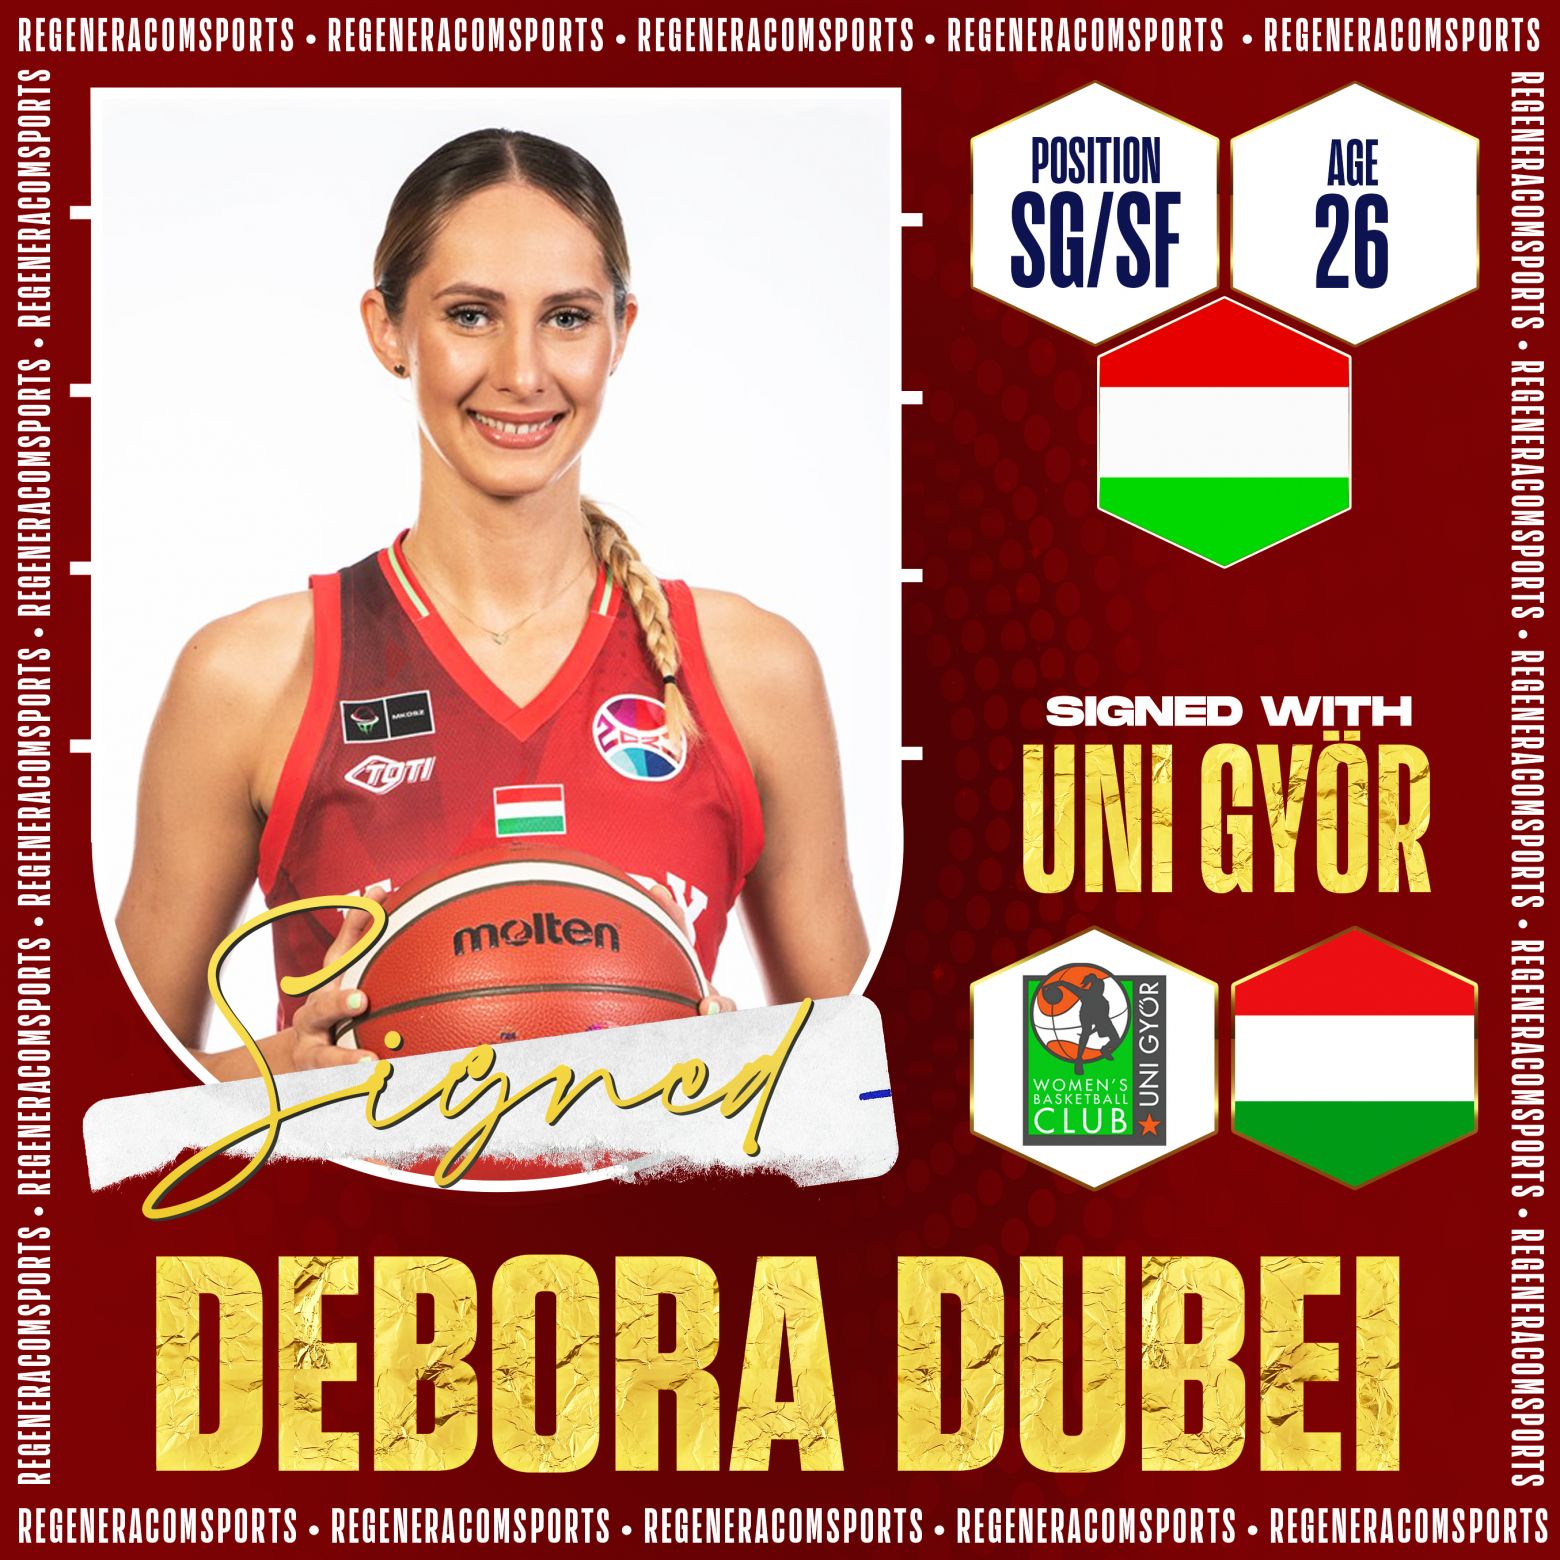 DEBORA DUBEI has re-signed with Uni Györ for the 2023/24 season